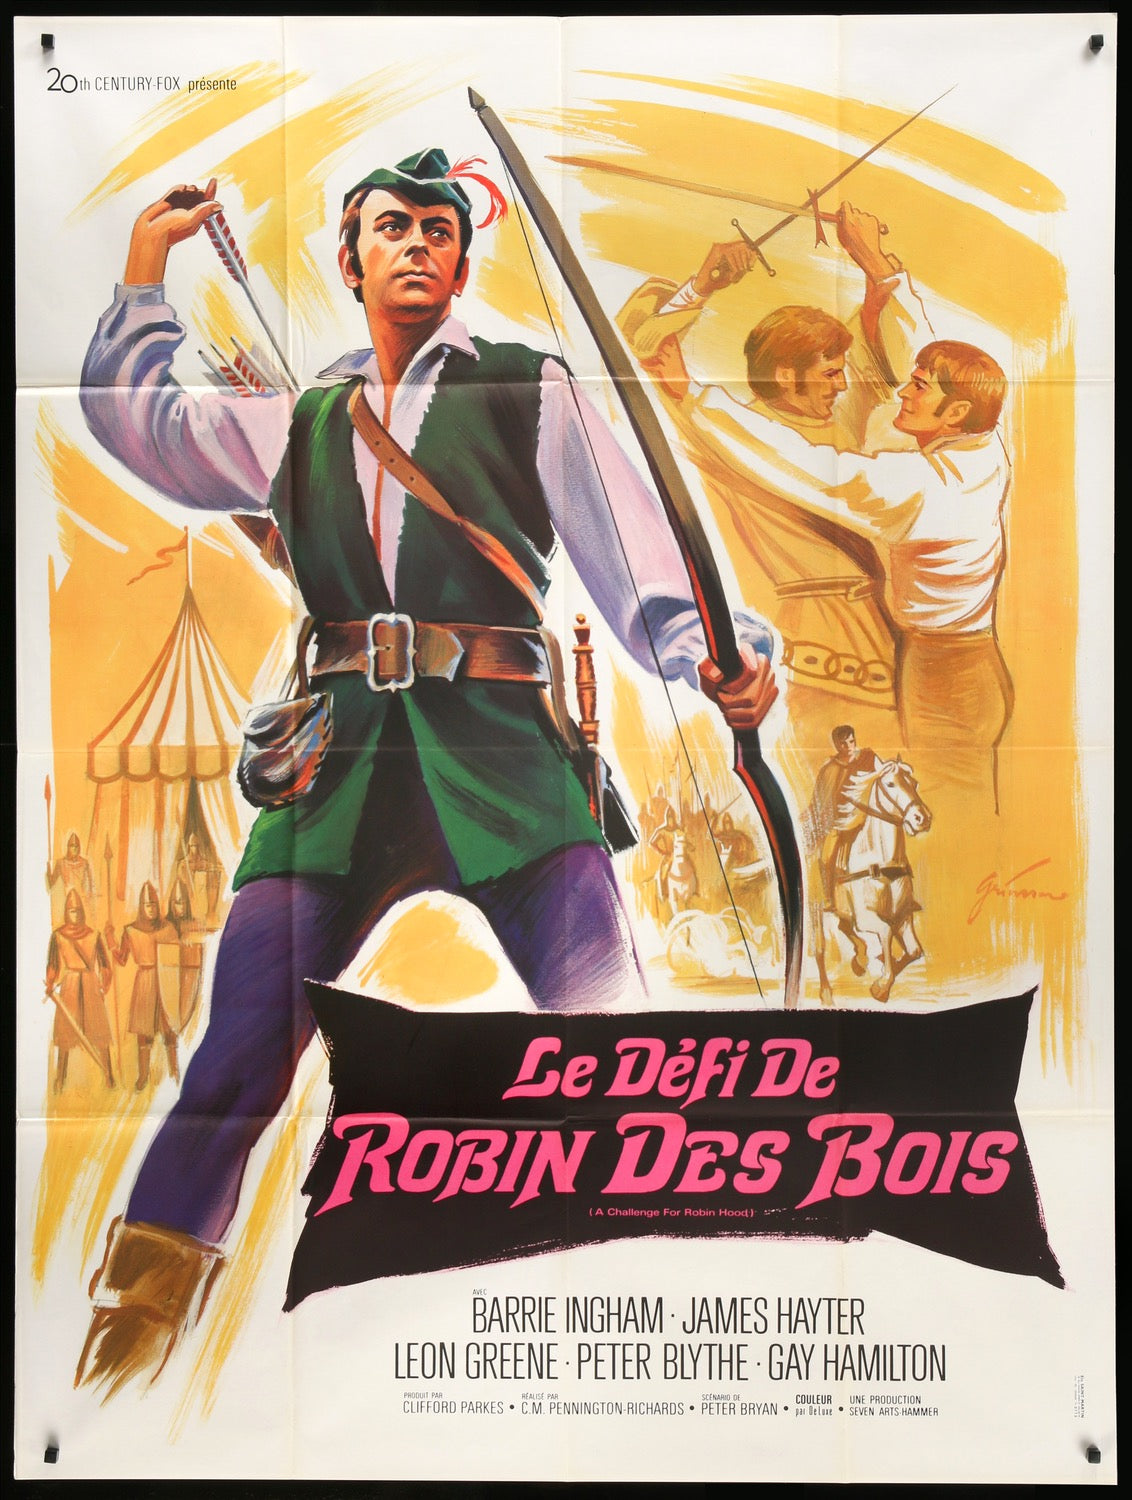 Challenge for Robin Hood (1967) original movie poster for sale at Original Film Art